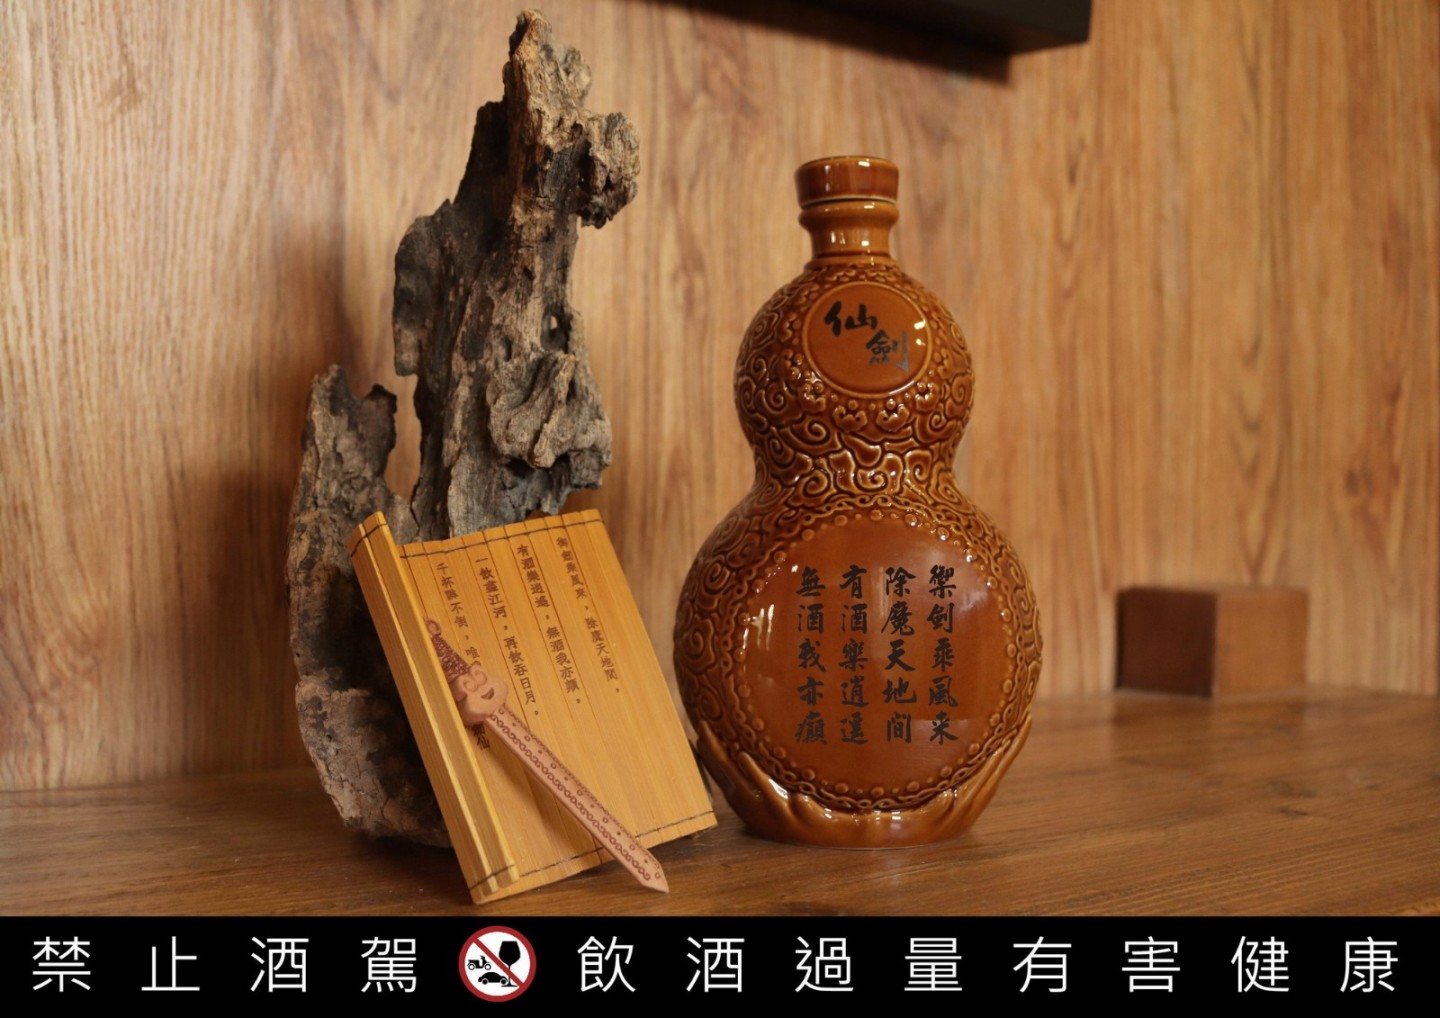 《仙剑奇侠传》推限量版"葫芦"造型纪念酒  8月31日开始预购-第4张